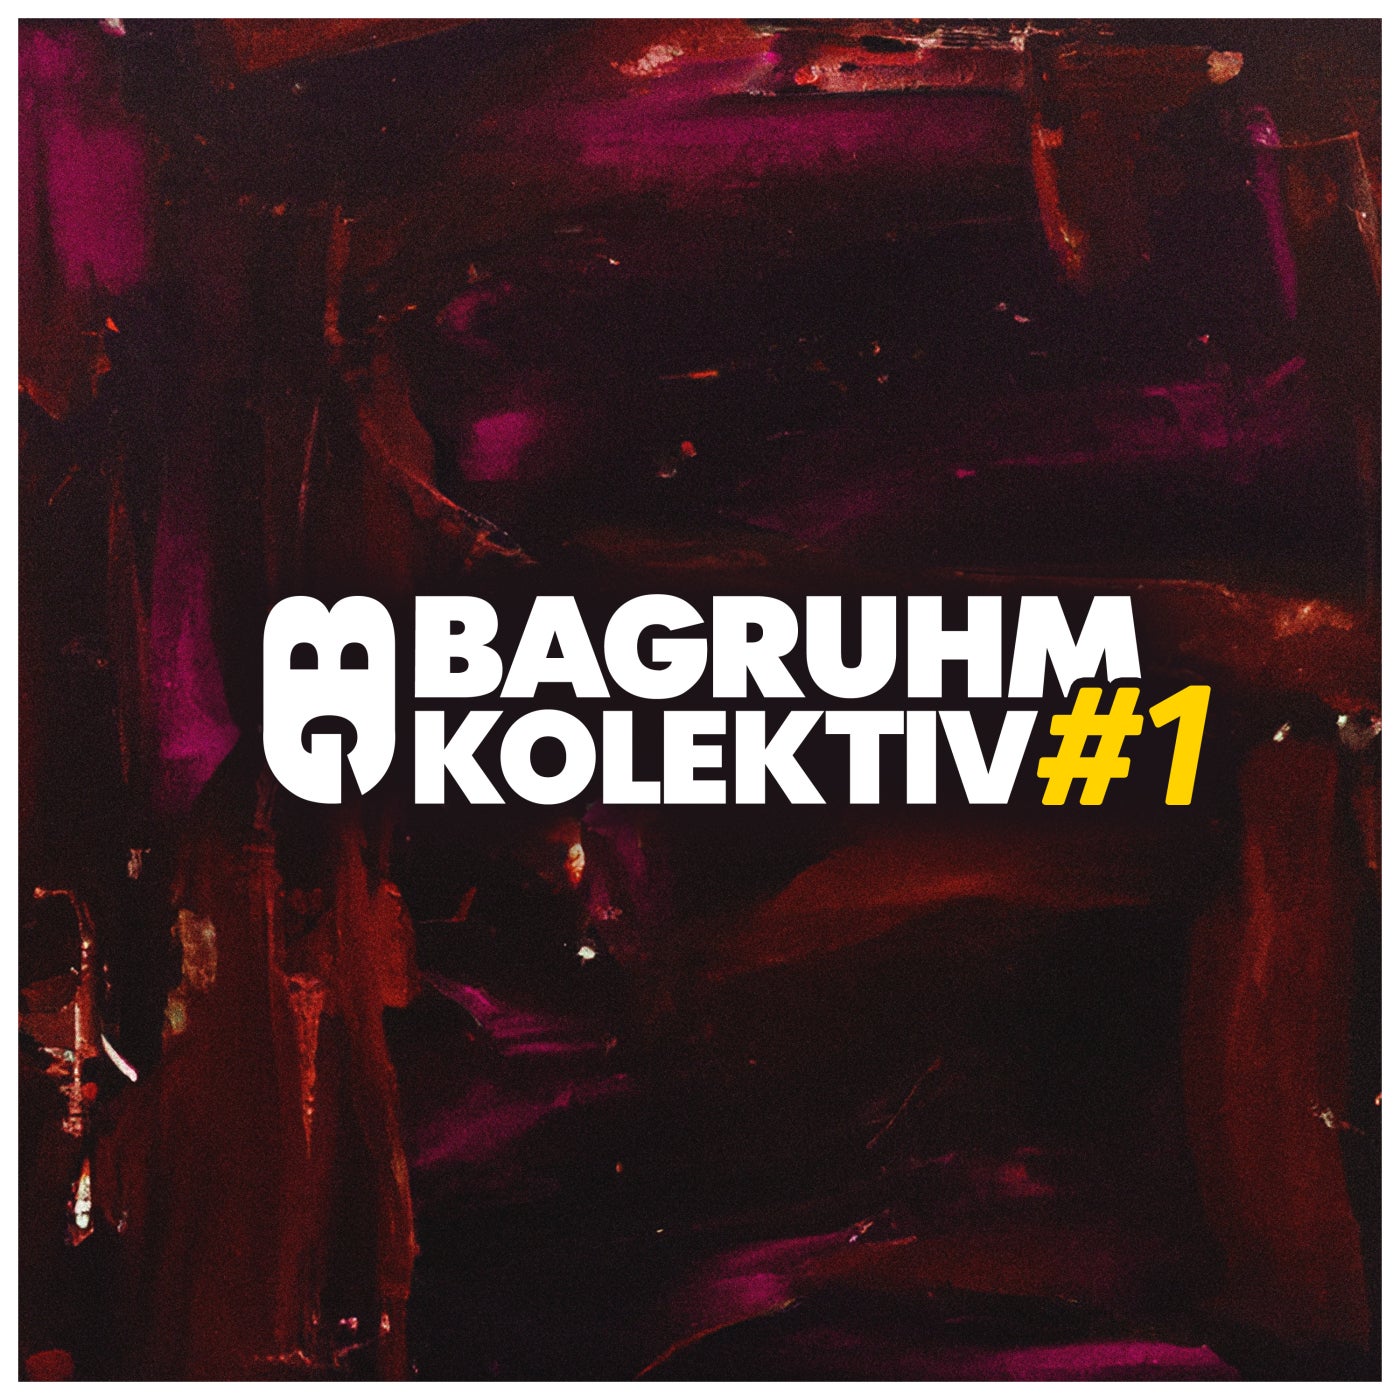 Bagruhm KOLEKTIV #1